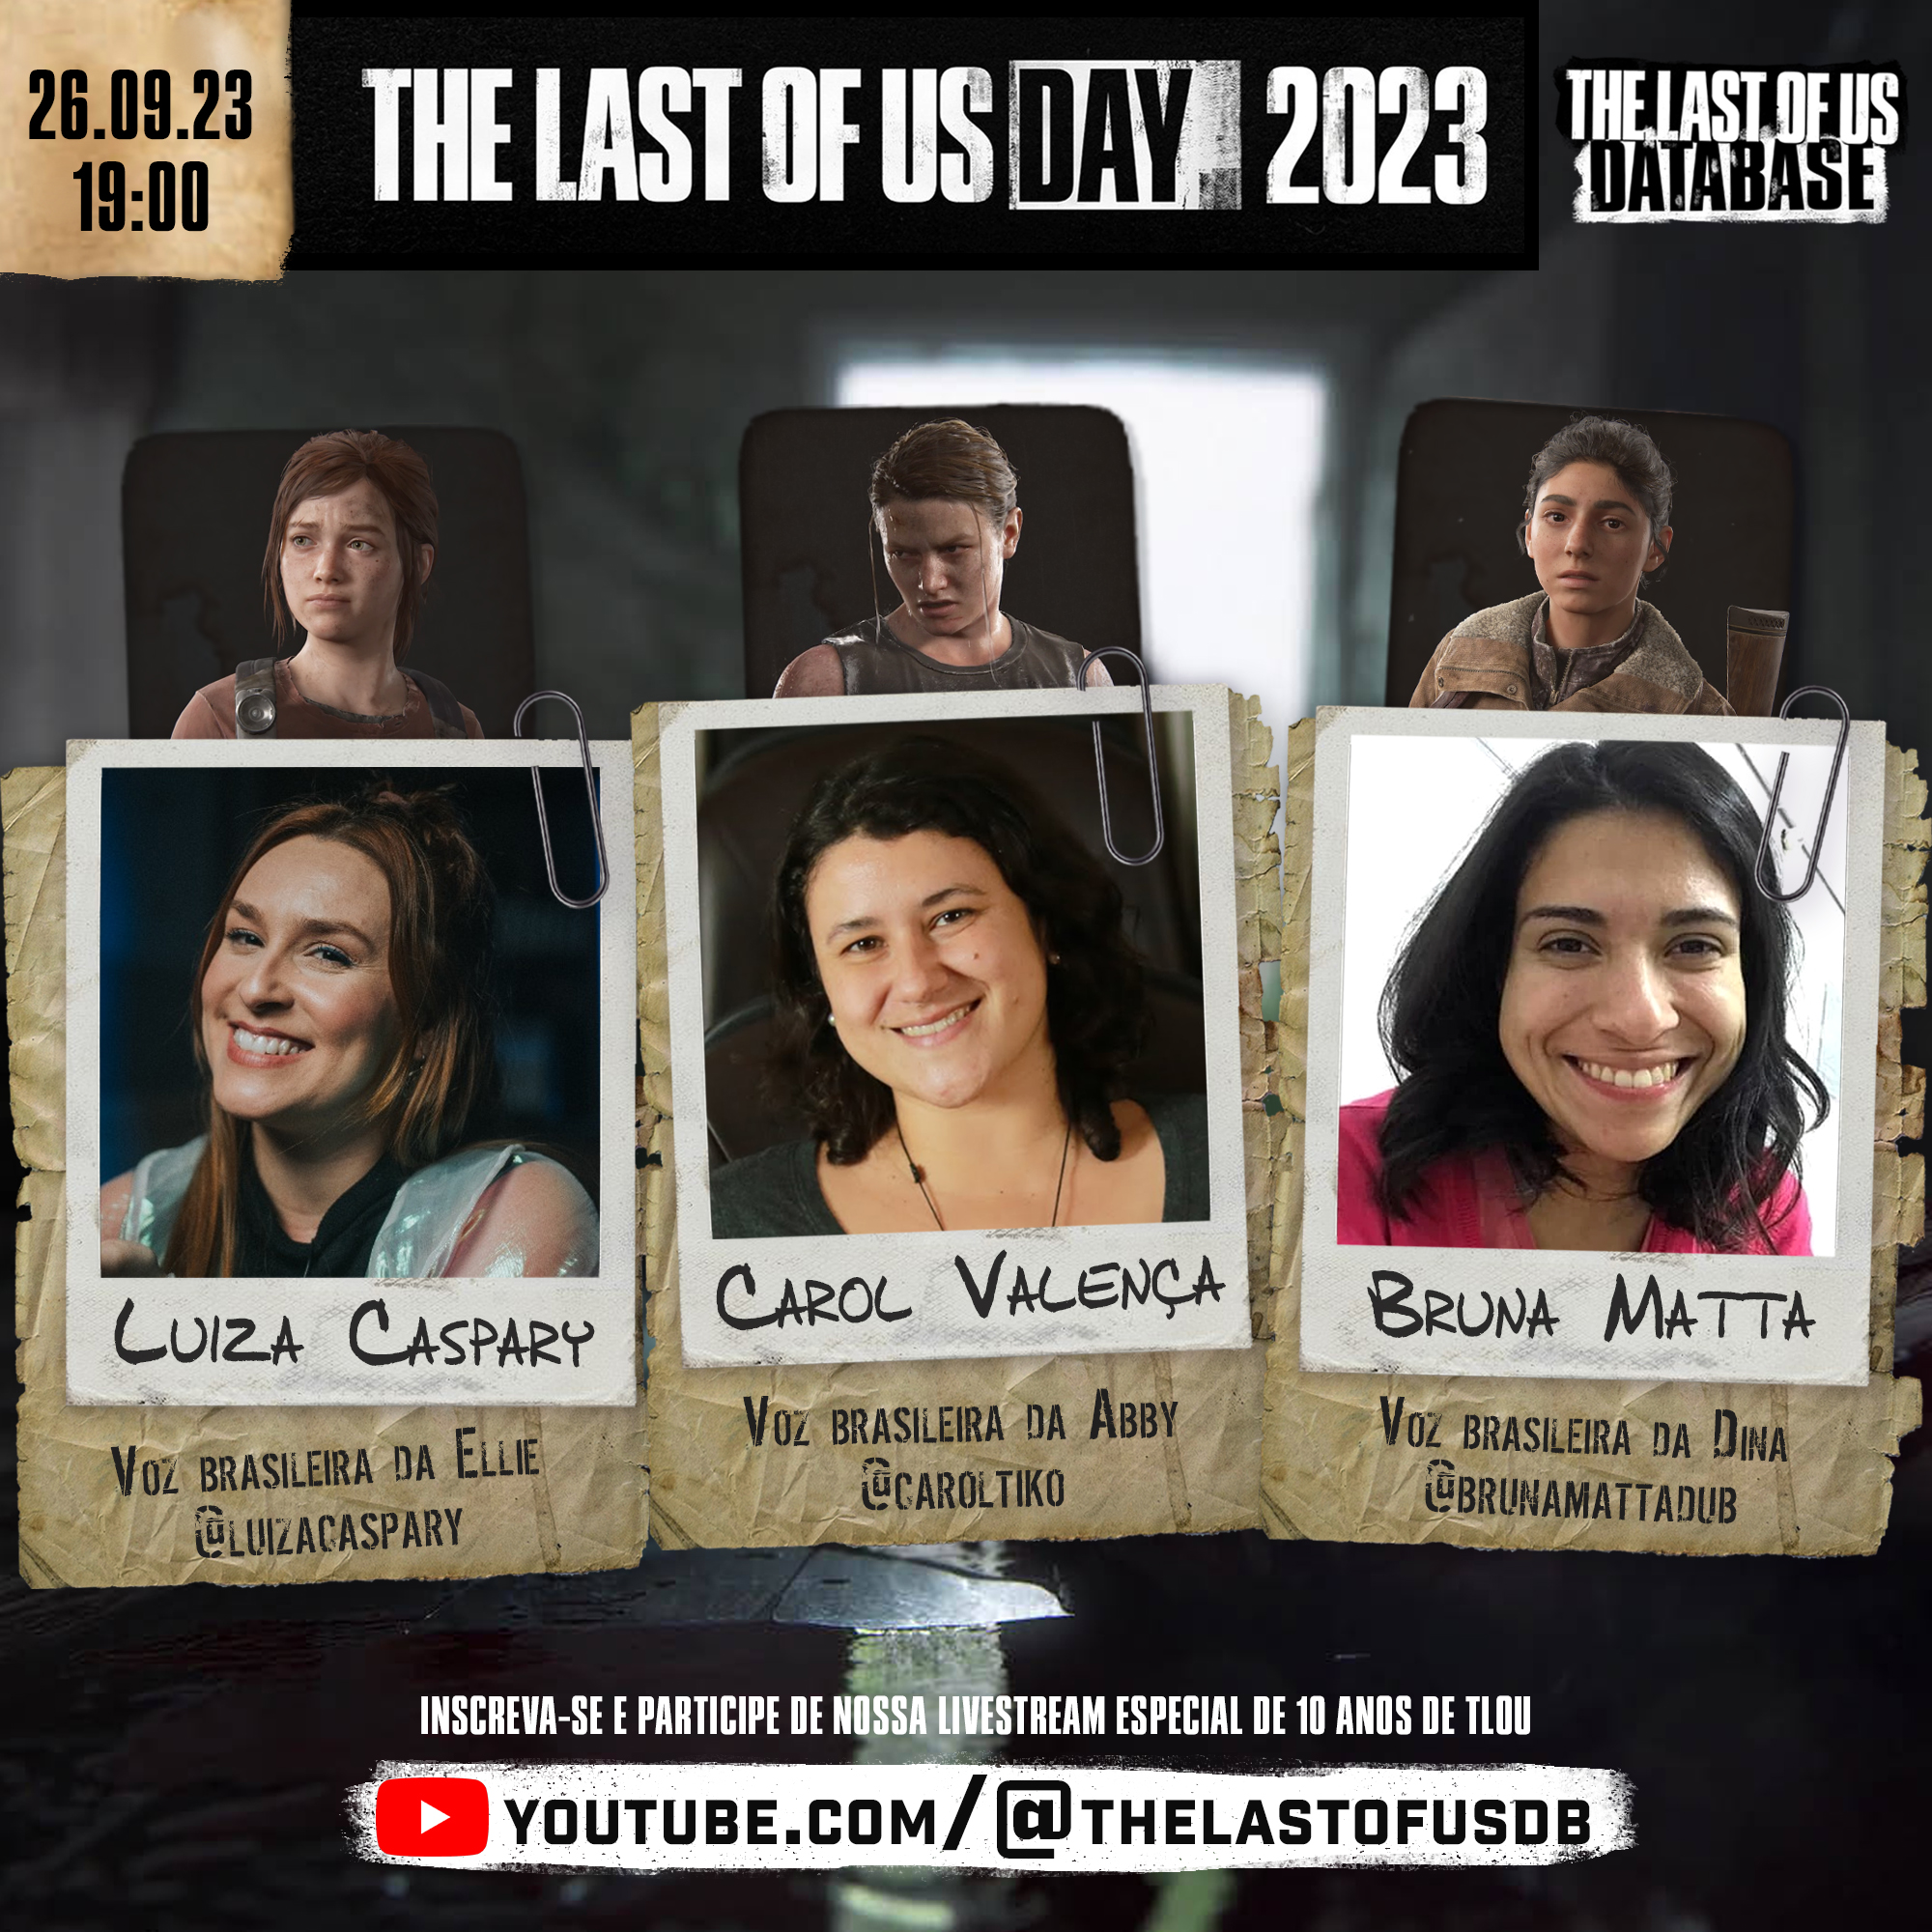 Voz de Joel em The Last of Us no Brasil, Luiz Carlos Persy está